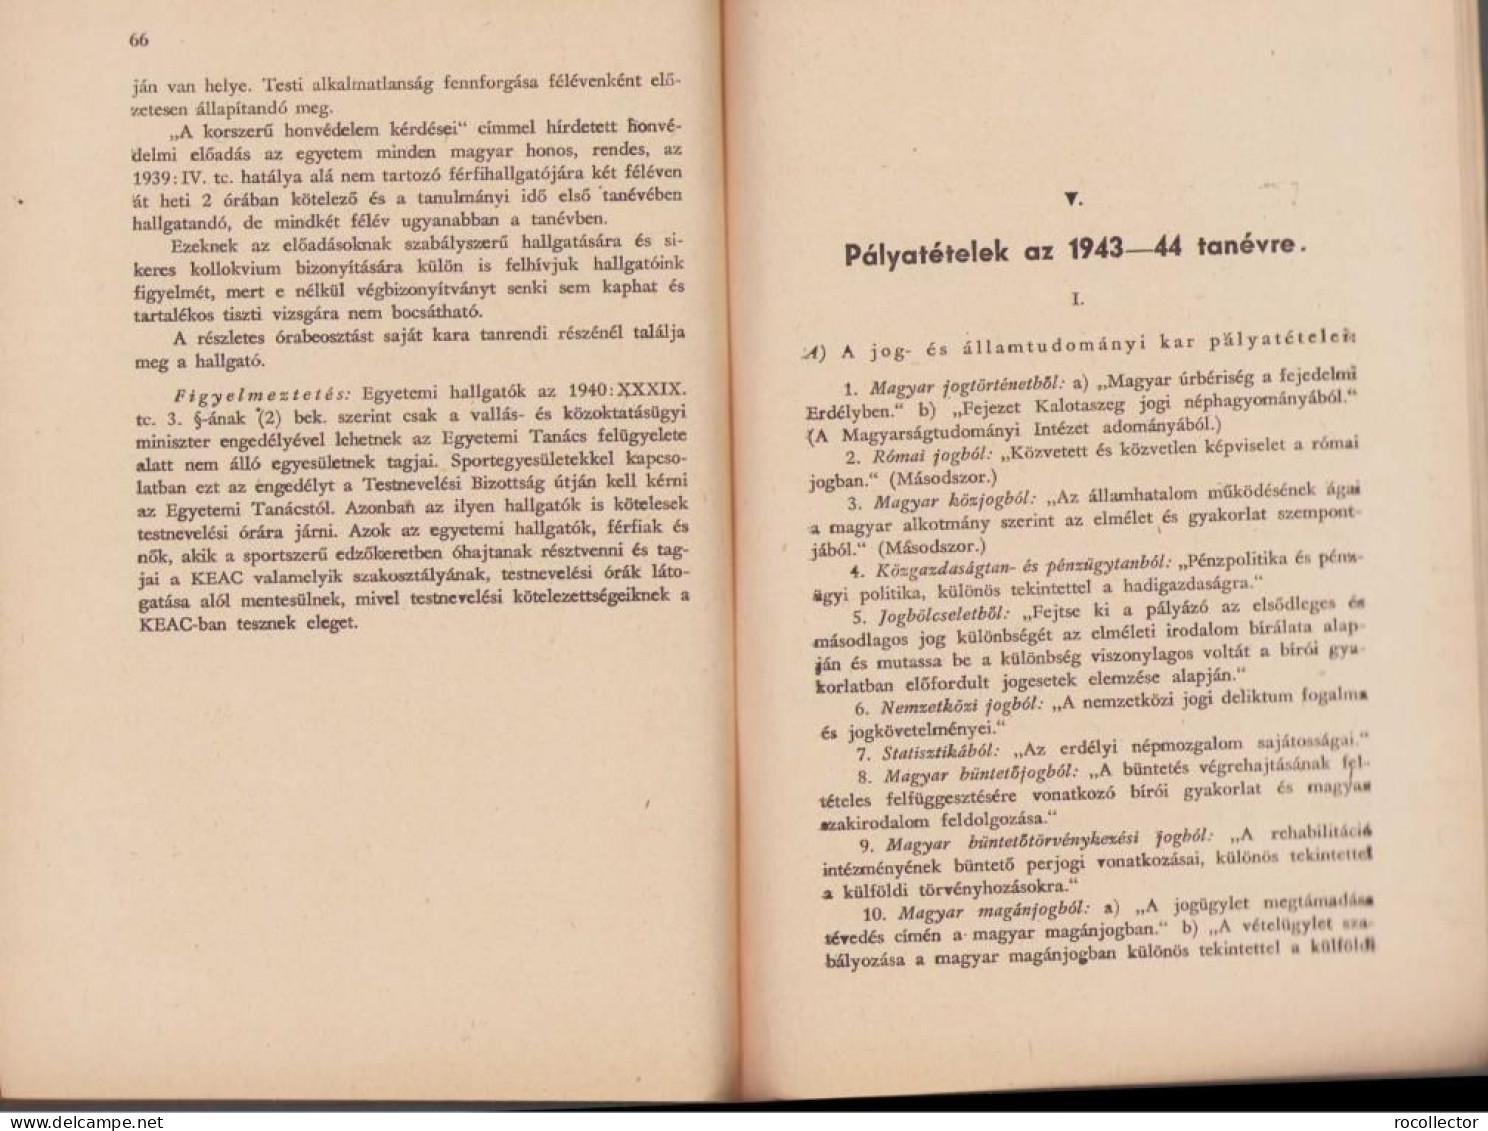 A magyar király Ferenc József-Tudományegyetem tanrendje az 1943-44 tanév, II resz Kolozsvar 1944 C1629